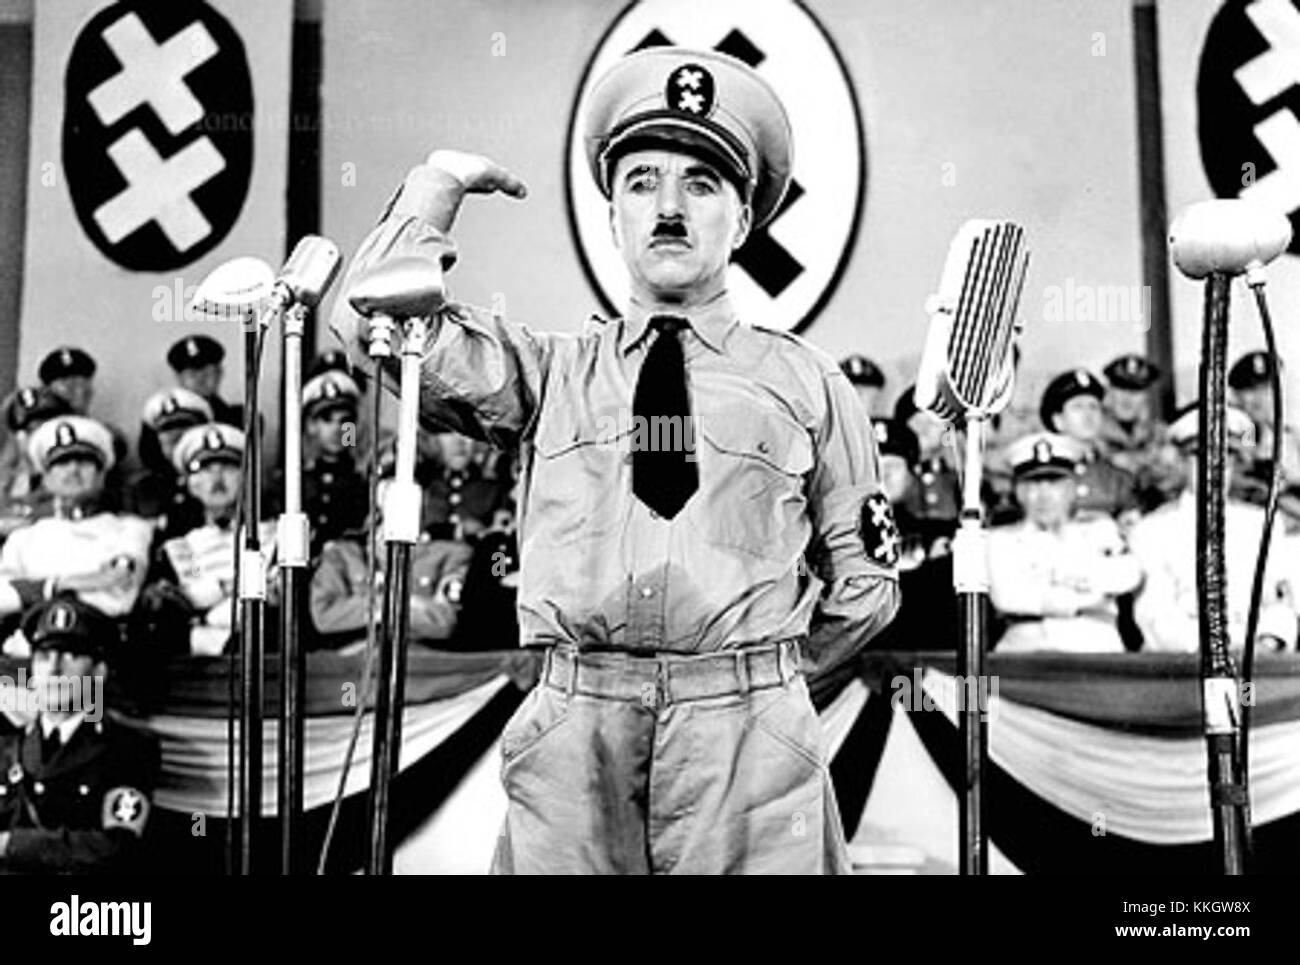 085007 1.tif. ** FILE **il leggendario attore/regista di film muto Charlie Chaplin è mostrato in una scena del film del 1940 'il grande dittatore', il suo primo film con dialogo, in questa foto promozionale. Chaplin interpreta i due ruoli di un barbiere ebreo dolce e di un dittatore omicida di tipo Hitler. Quattro dei film di Chaplin "The Gold Rush", "The Great Dictator", "Modern Times" e "Limelight", usciranno su DVD il 1° luglio 2003 da Warner Home Video, come primo di una serie di dieci titoli inclusi nella "The Chaplin Collection". (AP Photo/The Roy Export Company Establishment, ho) dittatore charlie Foto Stock